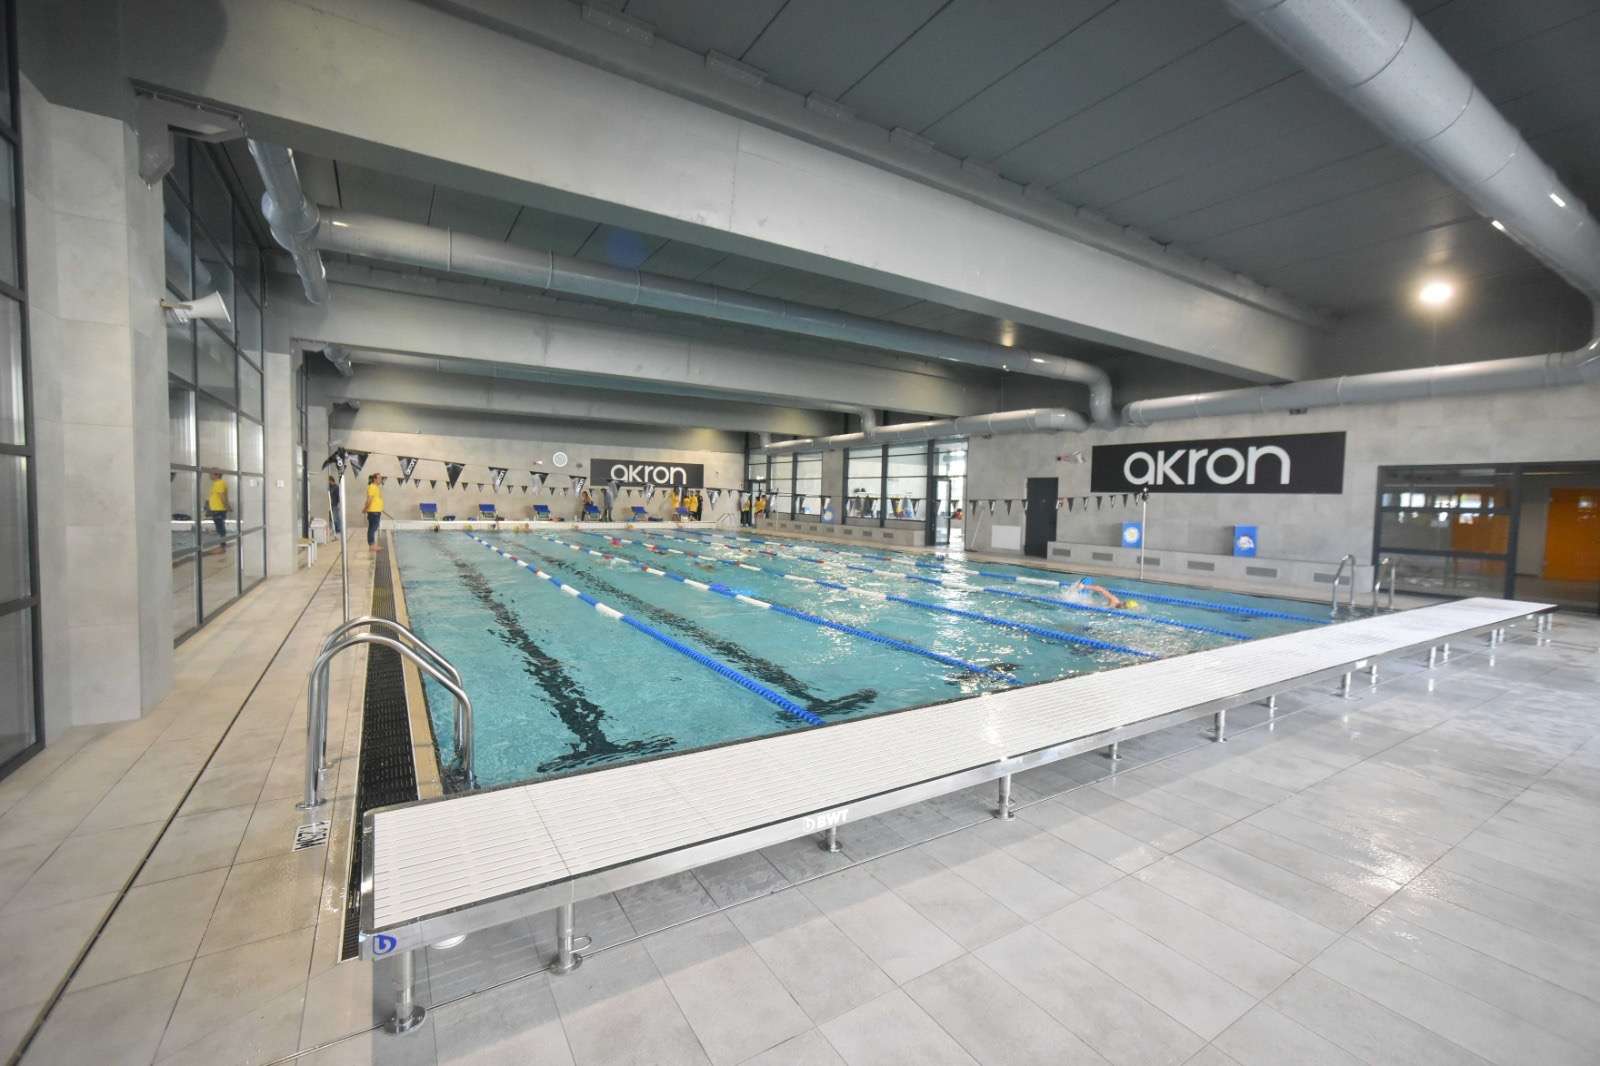 Moncalieri ha una nuova piscina, è stata inaugurata sabato 13 aprile in via Matilde Serao